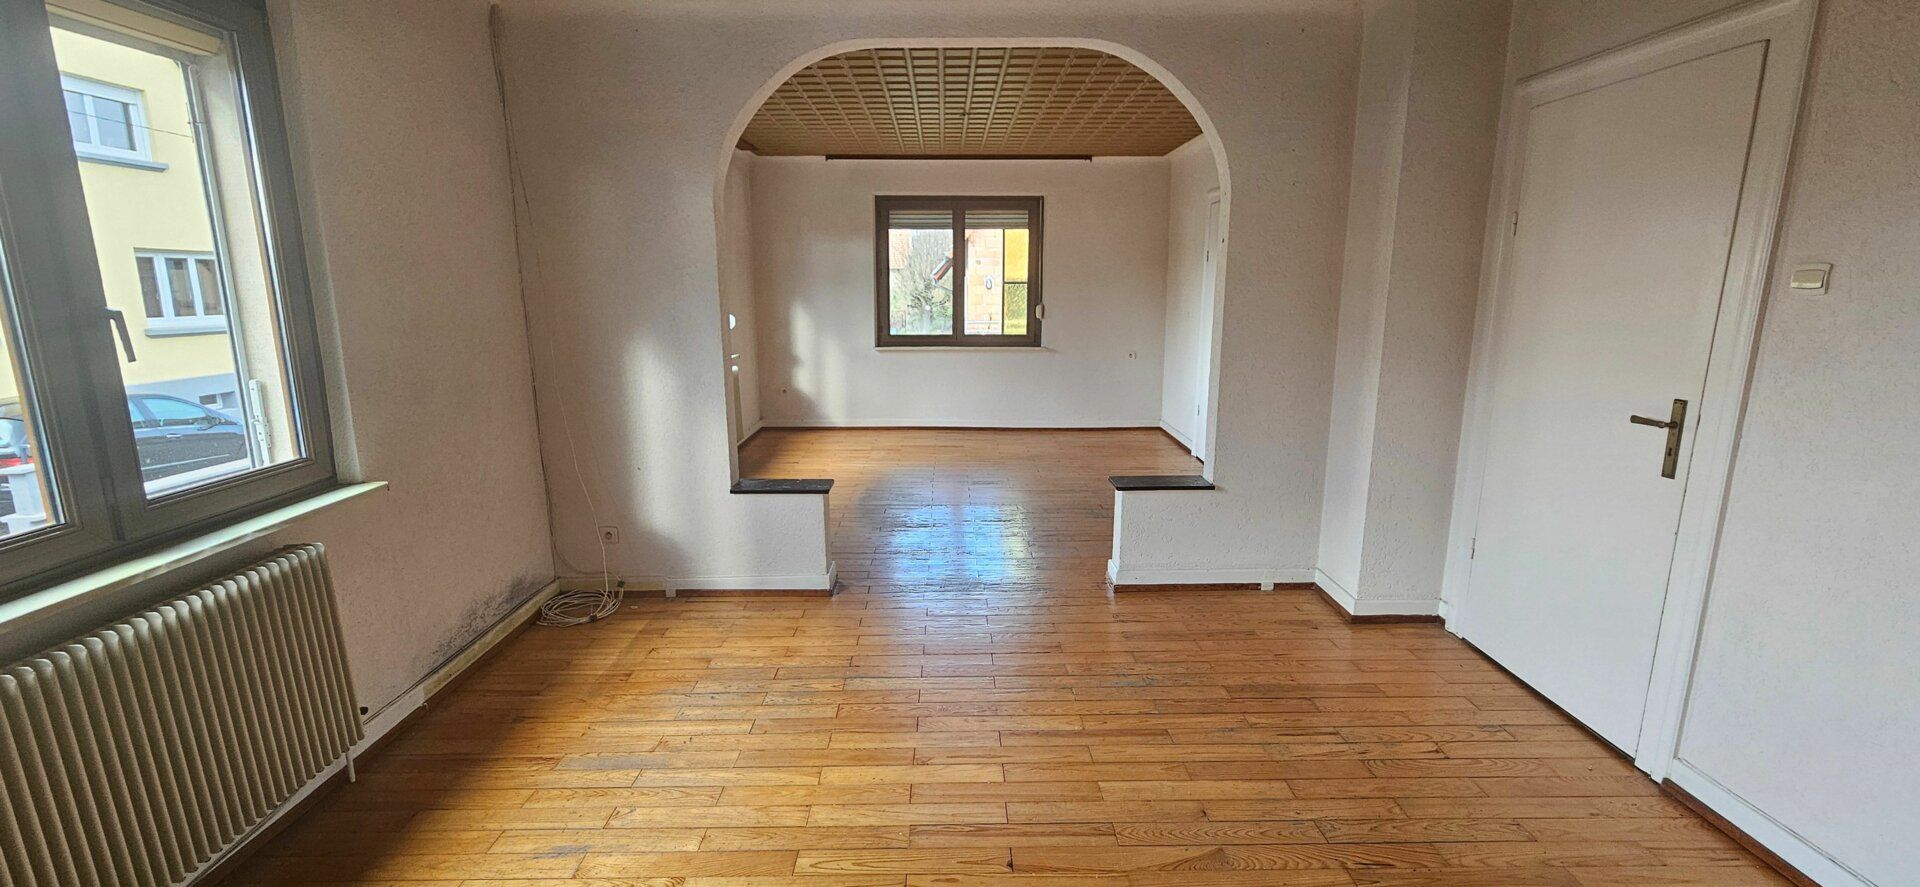 Maison à vendre 4 128m2 à Weyersheim vignette-16